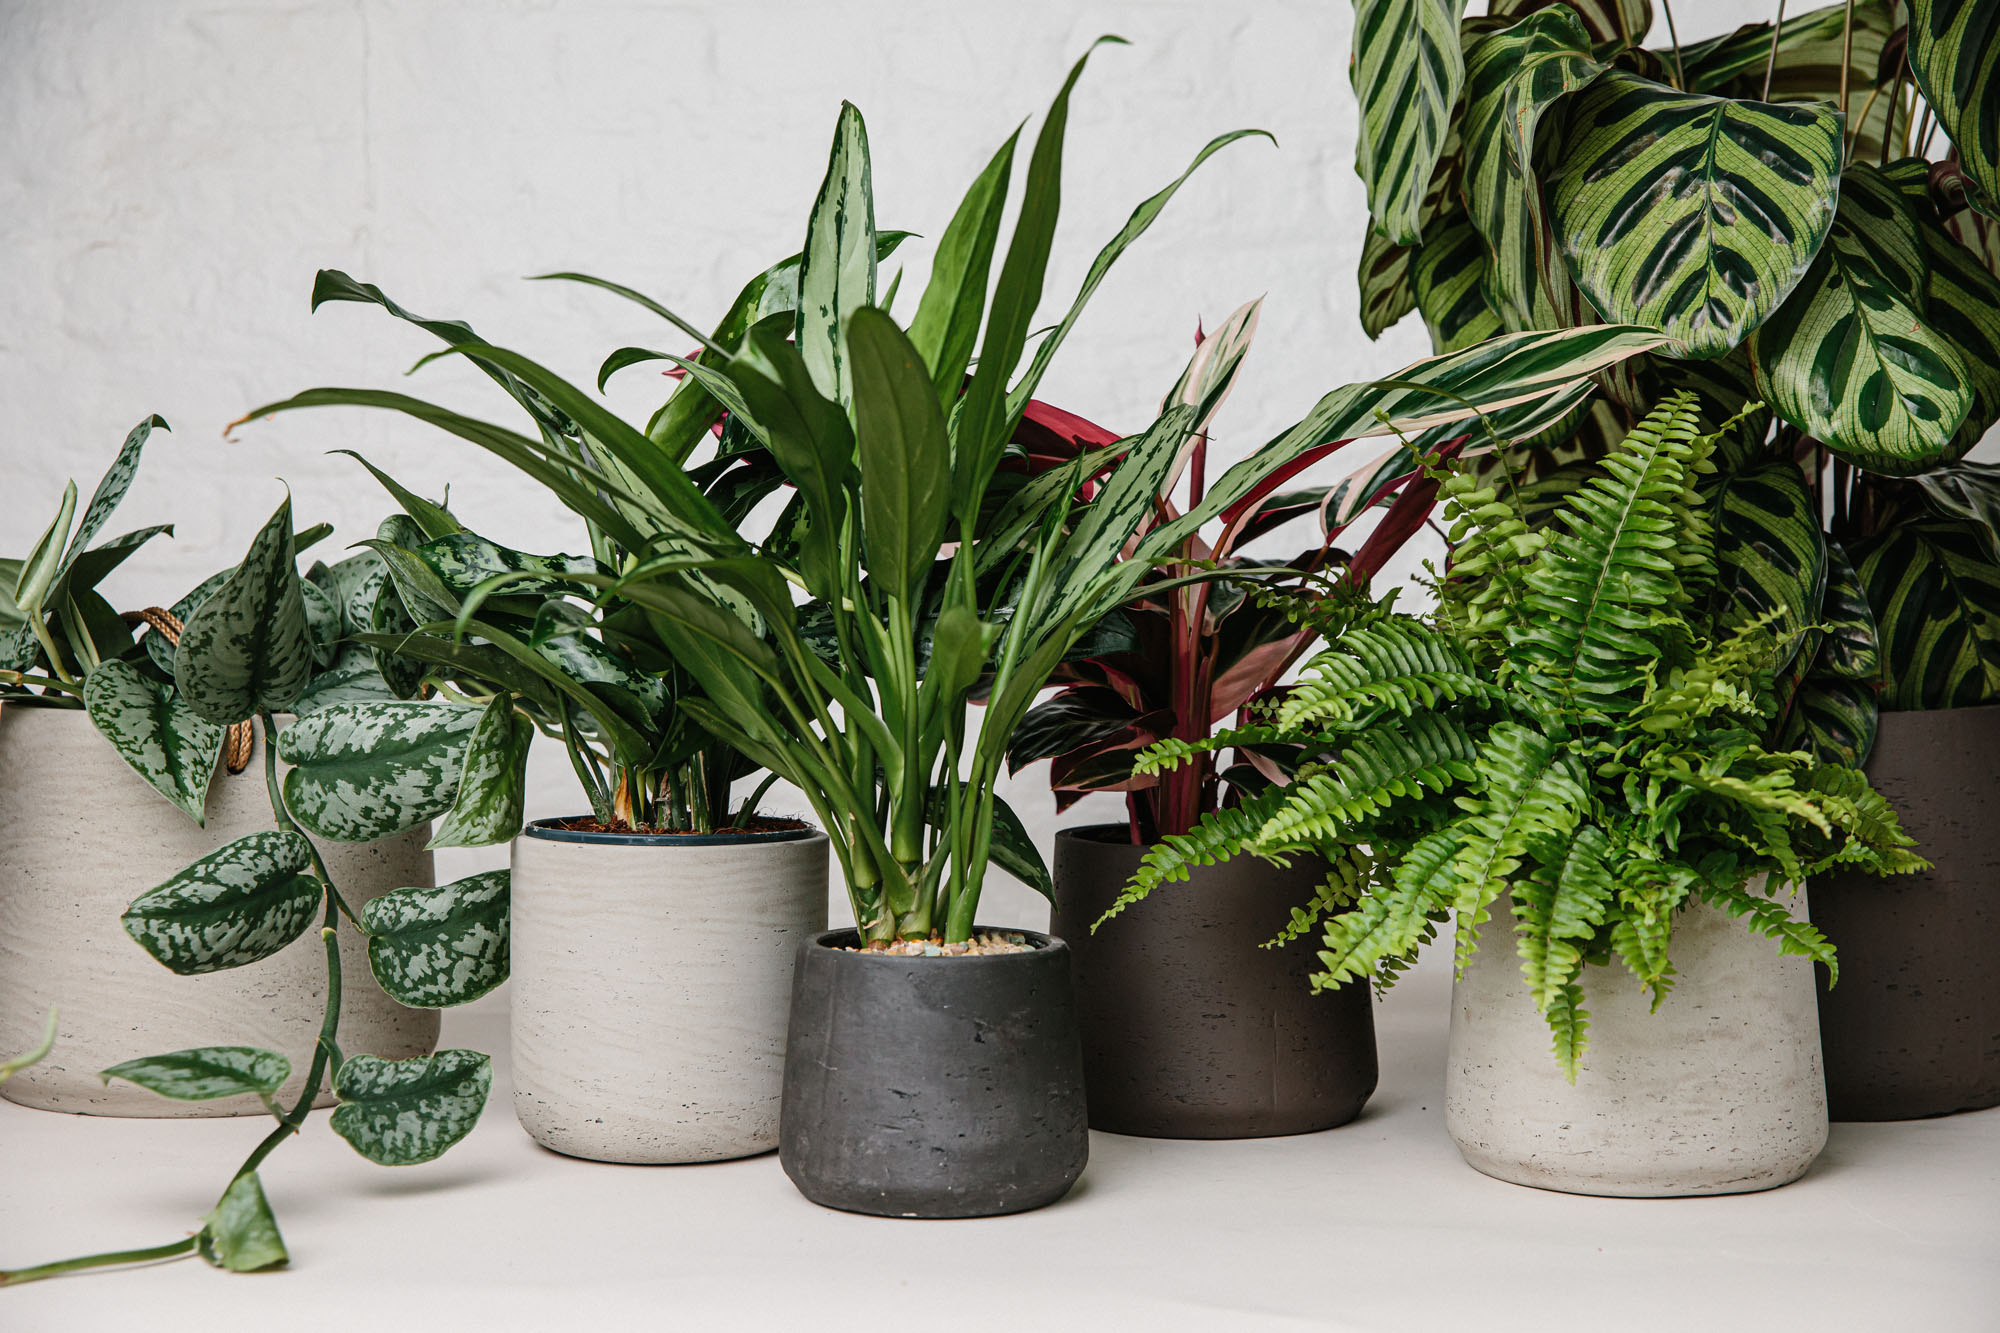 plants in pots on floor